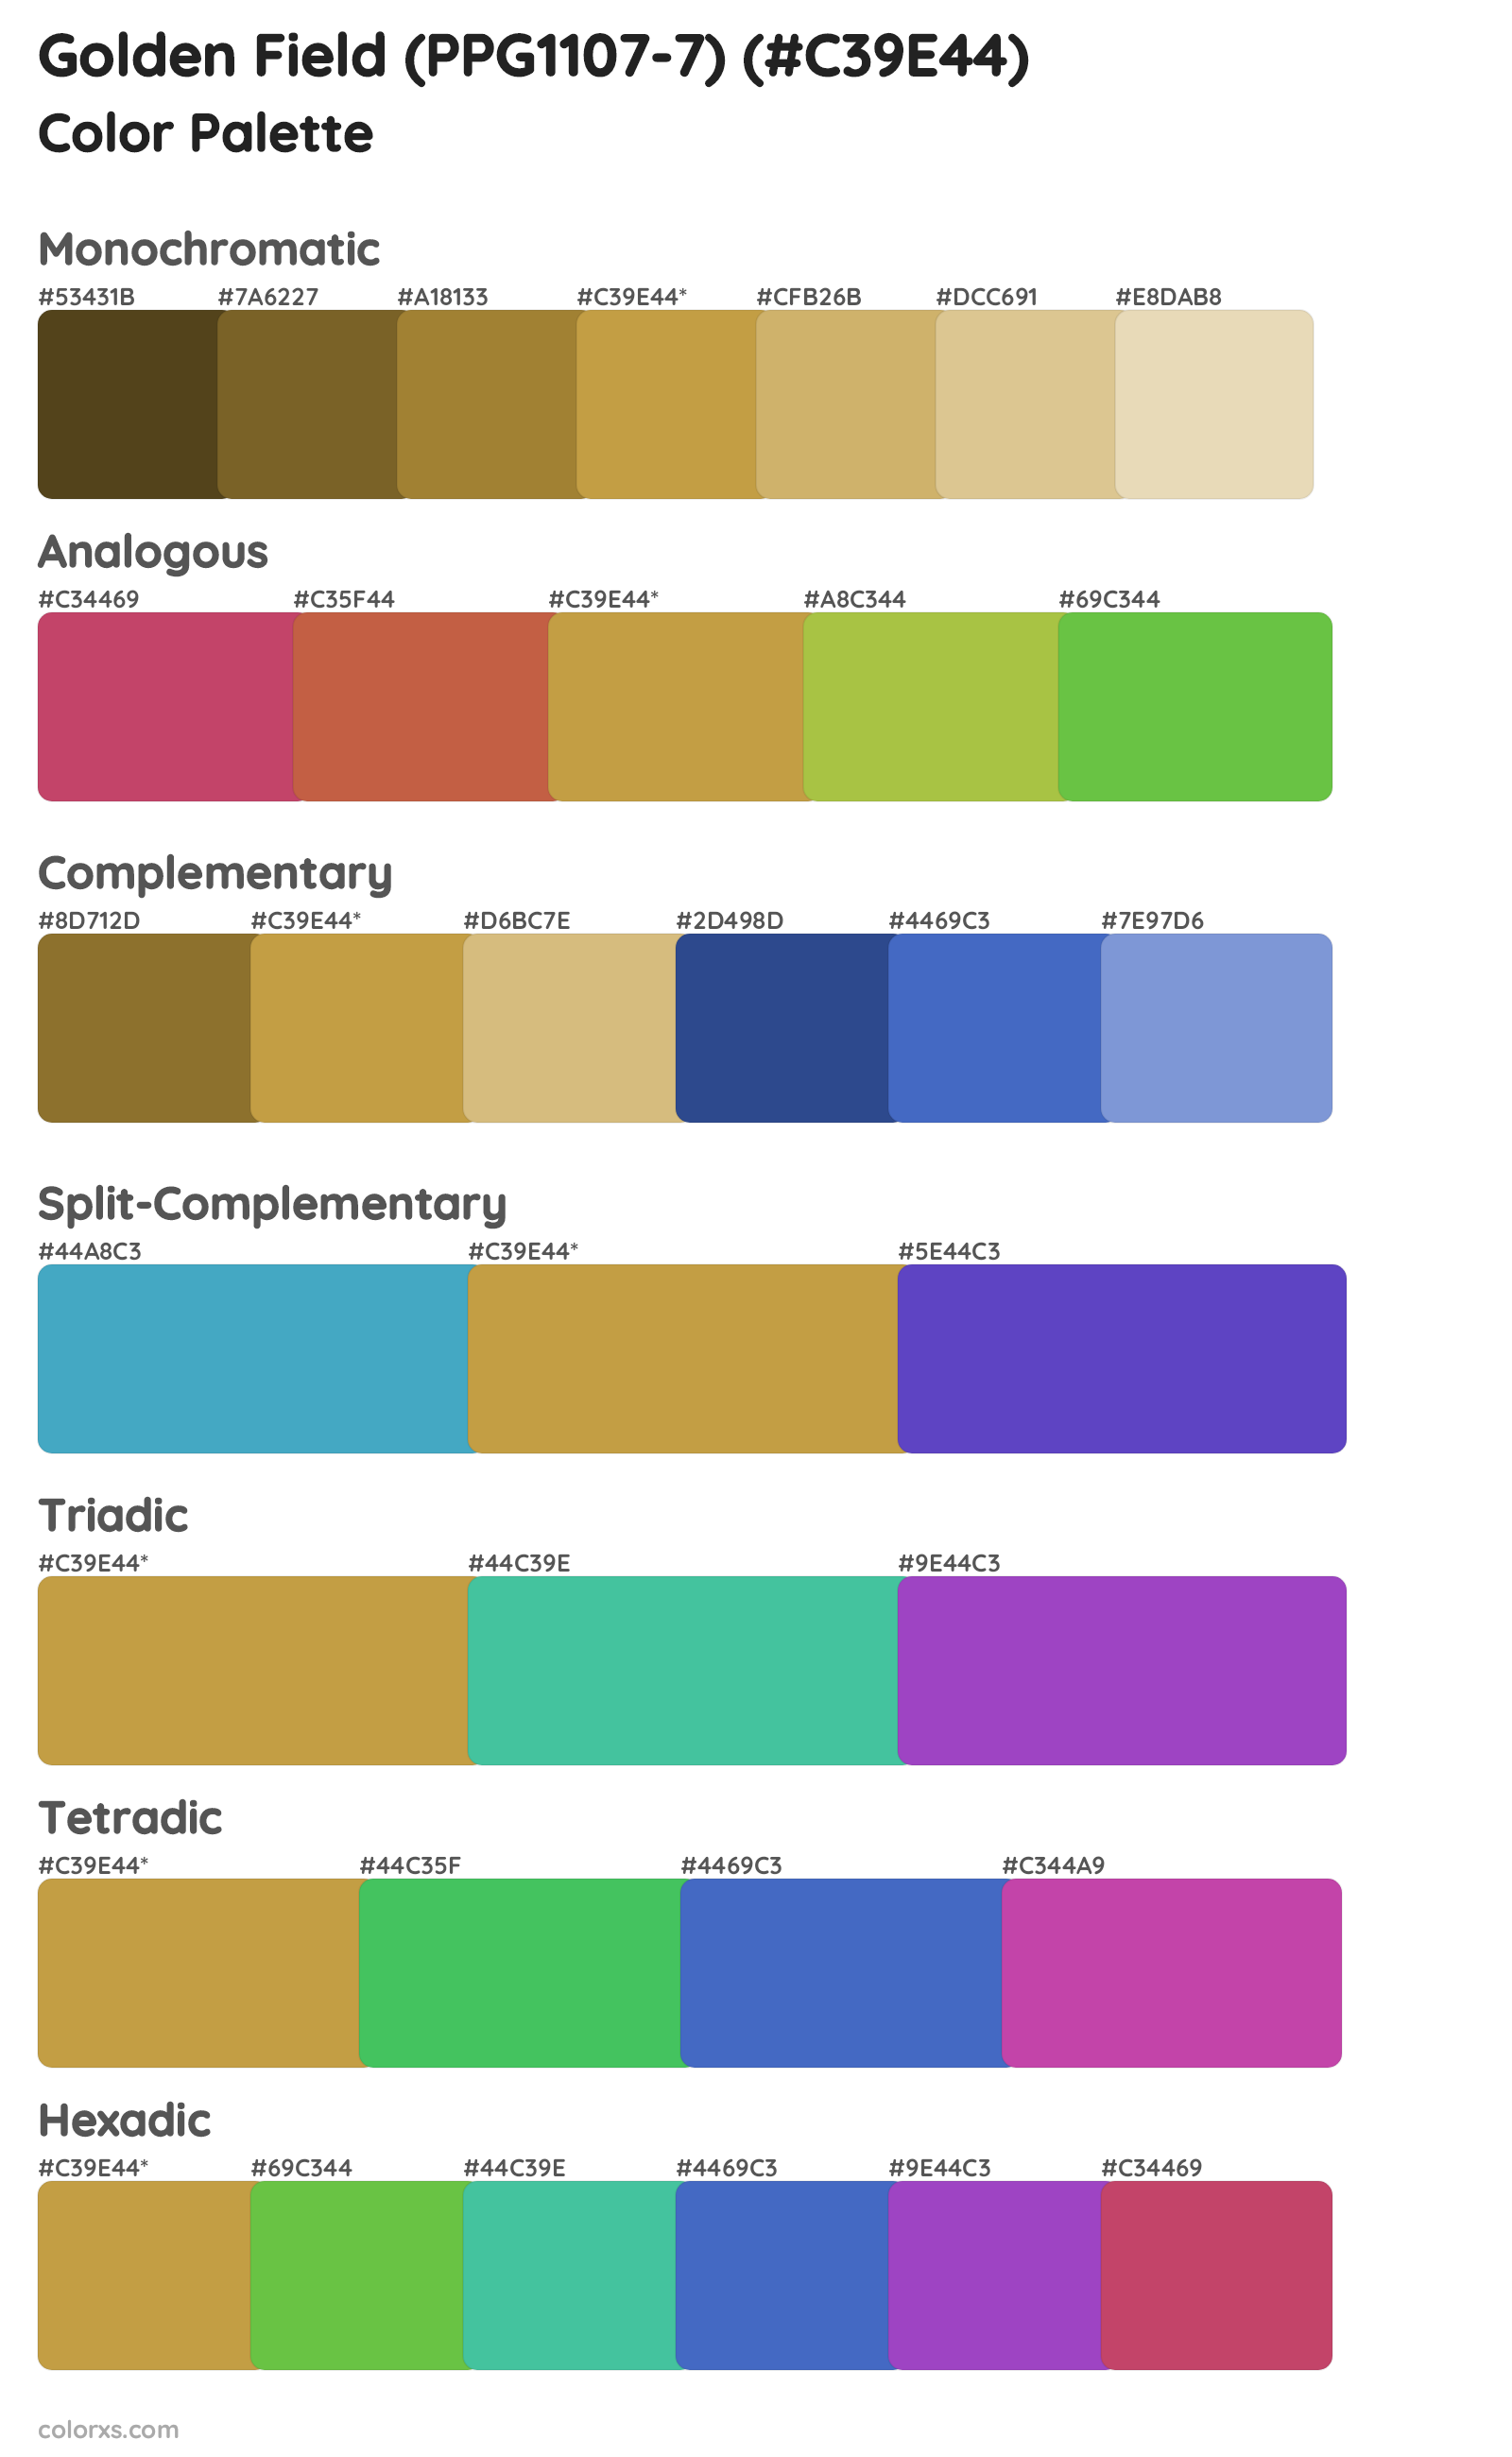 Golden Field (PPG1107-7) Color Scheme Palettes